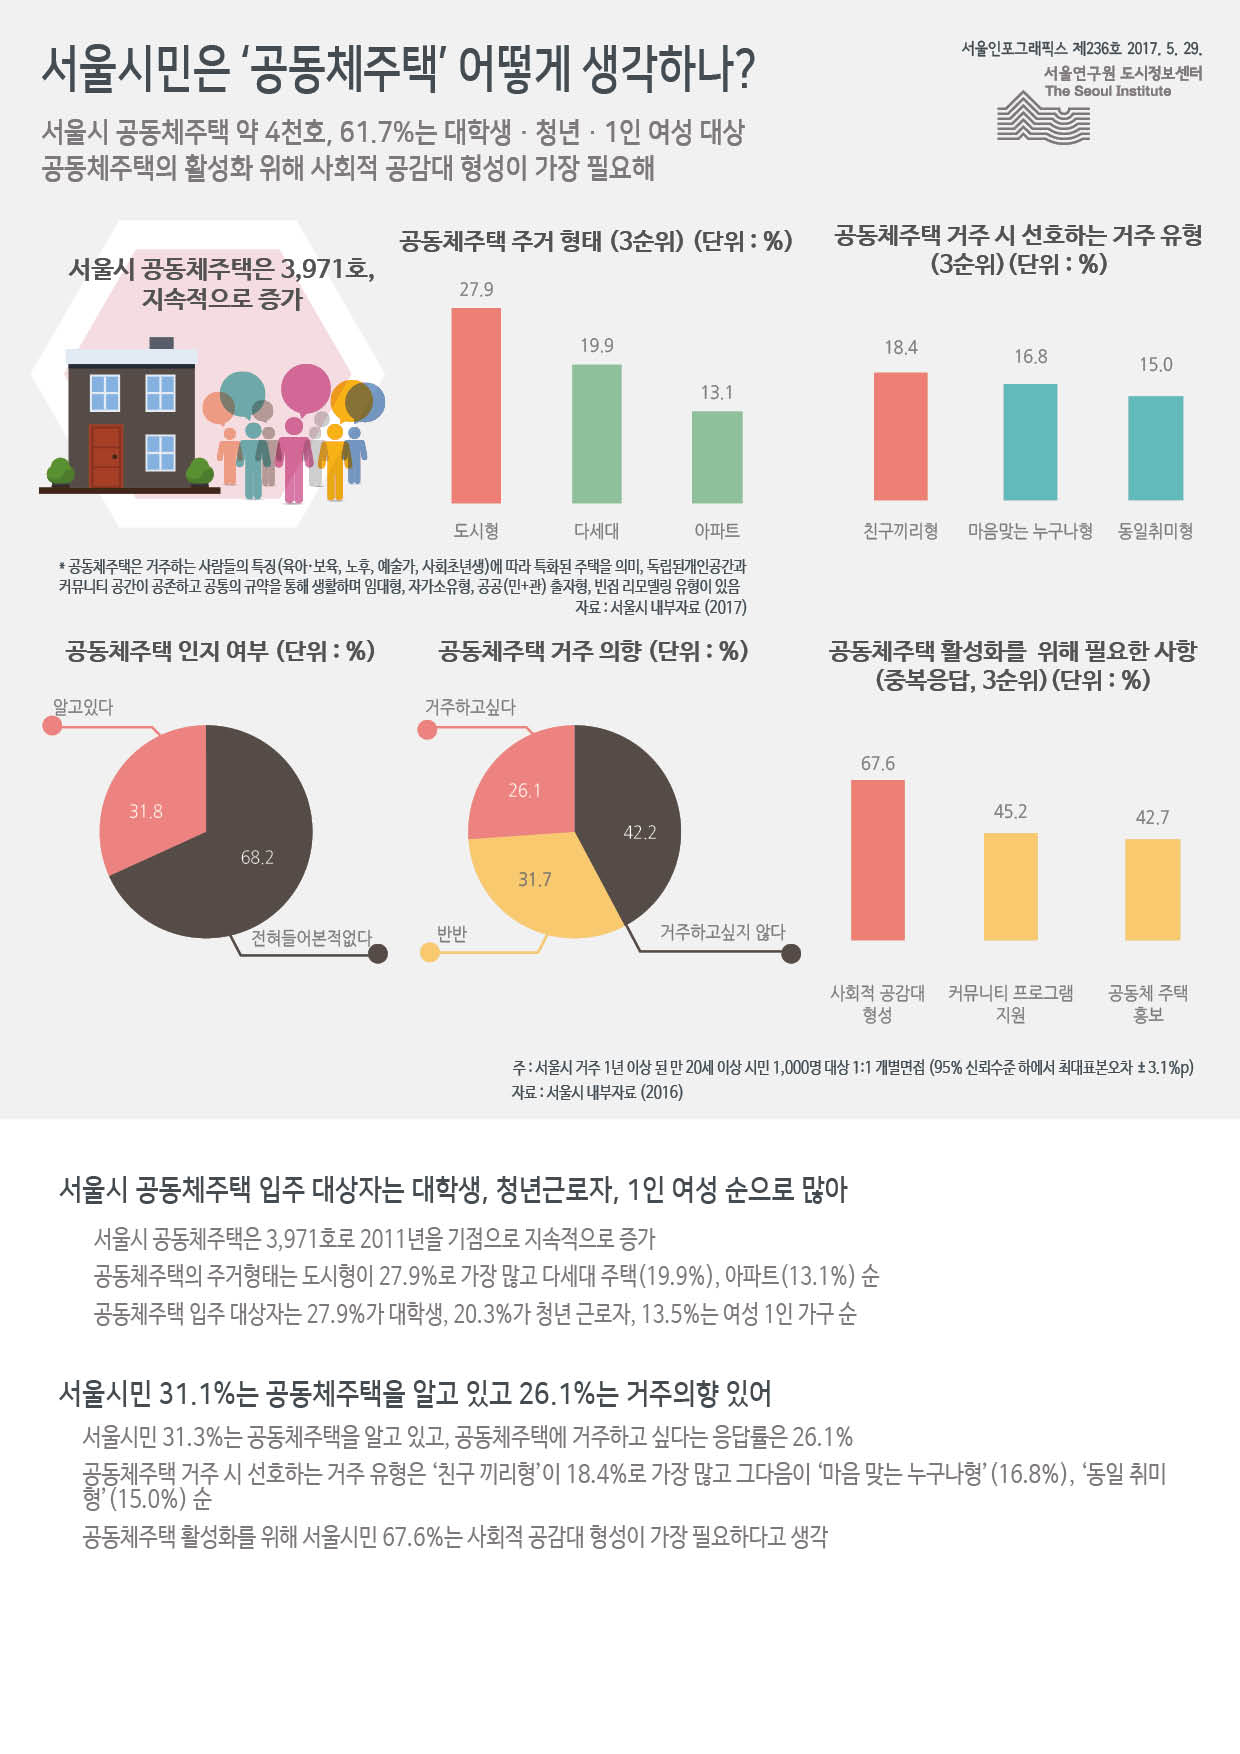  서울시 공동체주택 약 4천호, 61.7%는 대학생？청년？1인 여성 대상    공동체주택의 활성화 위해 사회적 공감대 형성이 가장 필요해 (하단 내용 참조)